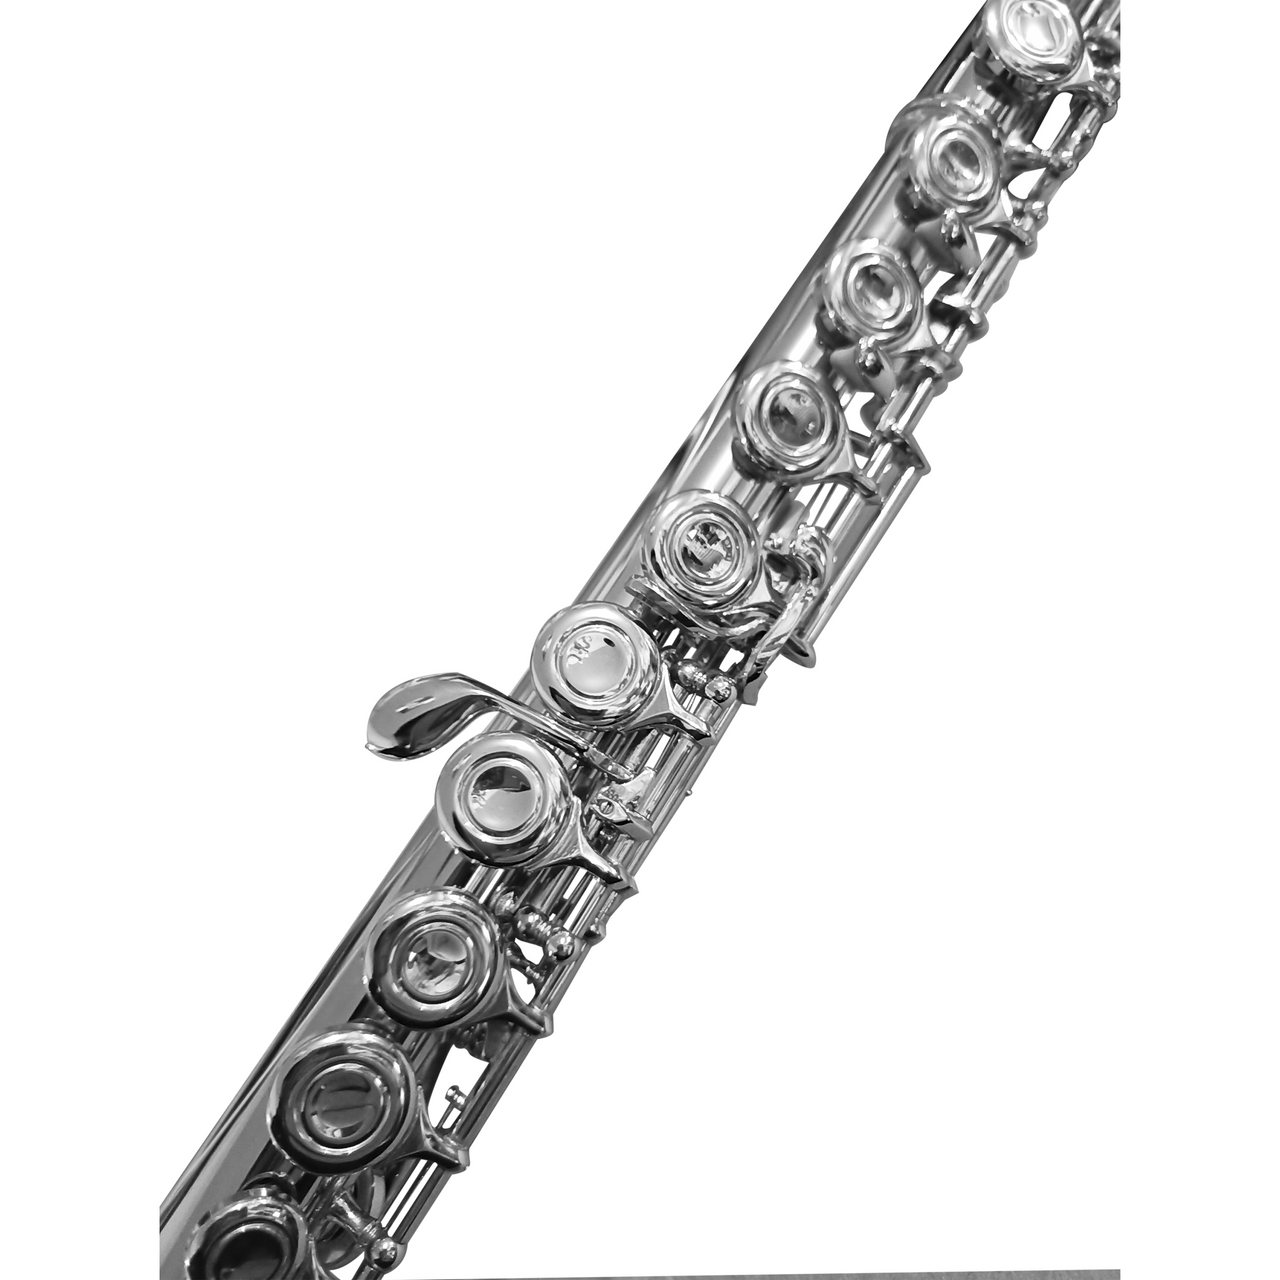 Flauta Transversal Silvertone Niq. C/Est, 111-6c, Slft002